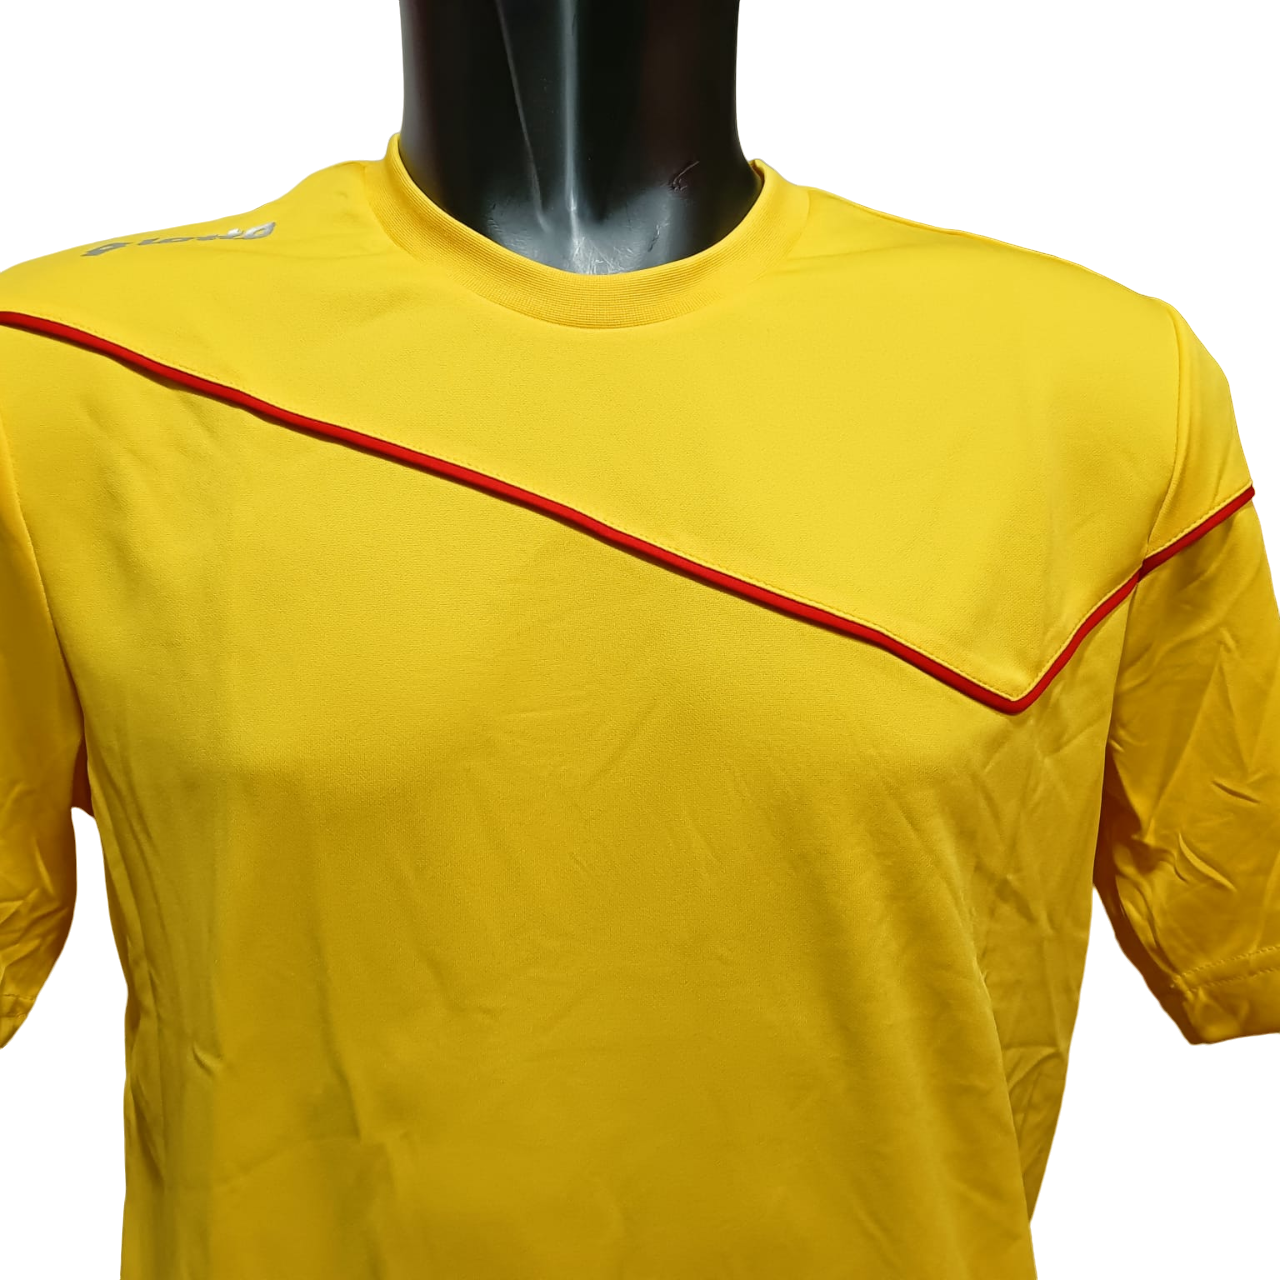 Lotto divisa sportiva da calcio-calcetto da adulto Sigma Q8531 giallo-rosso